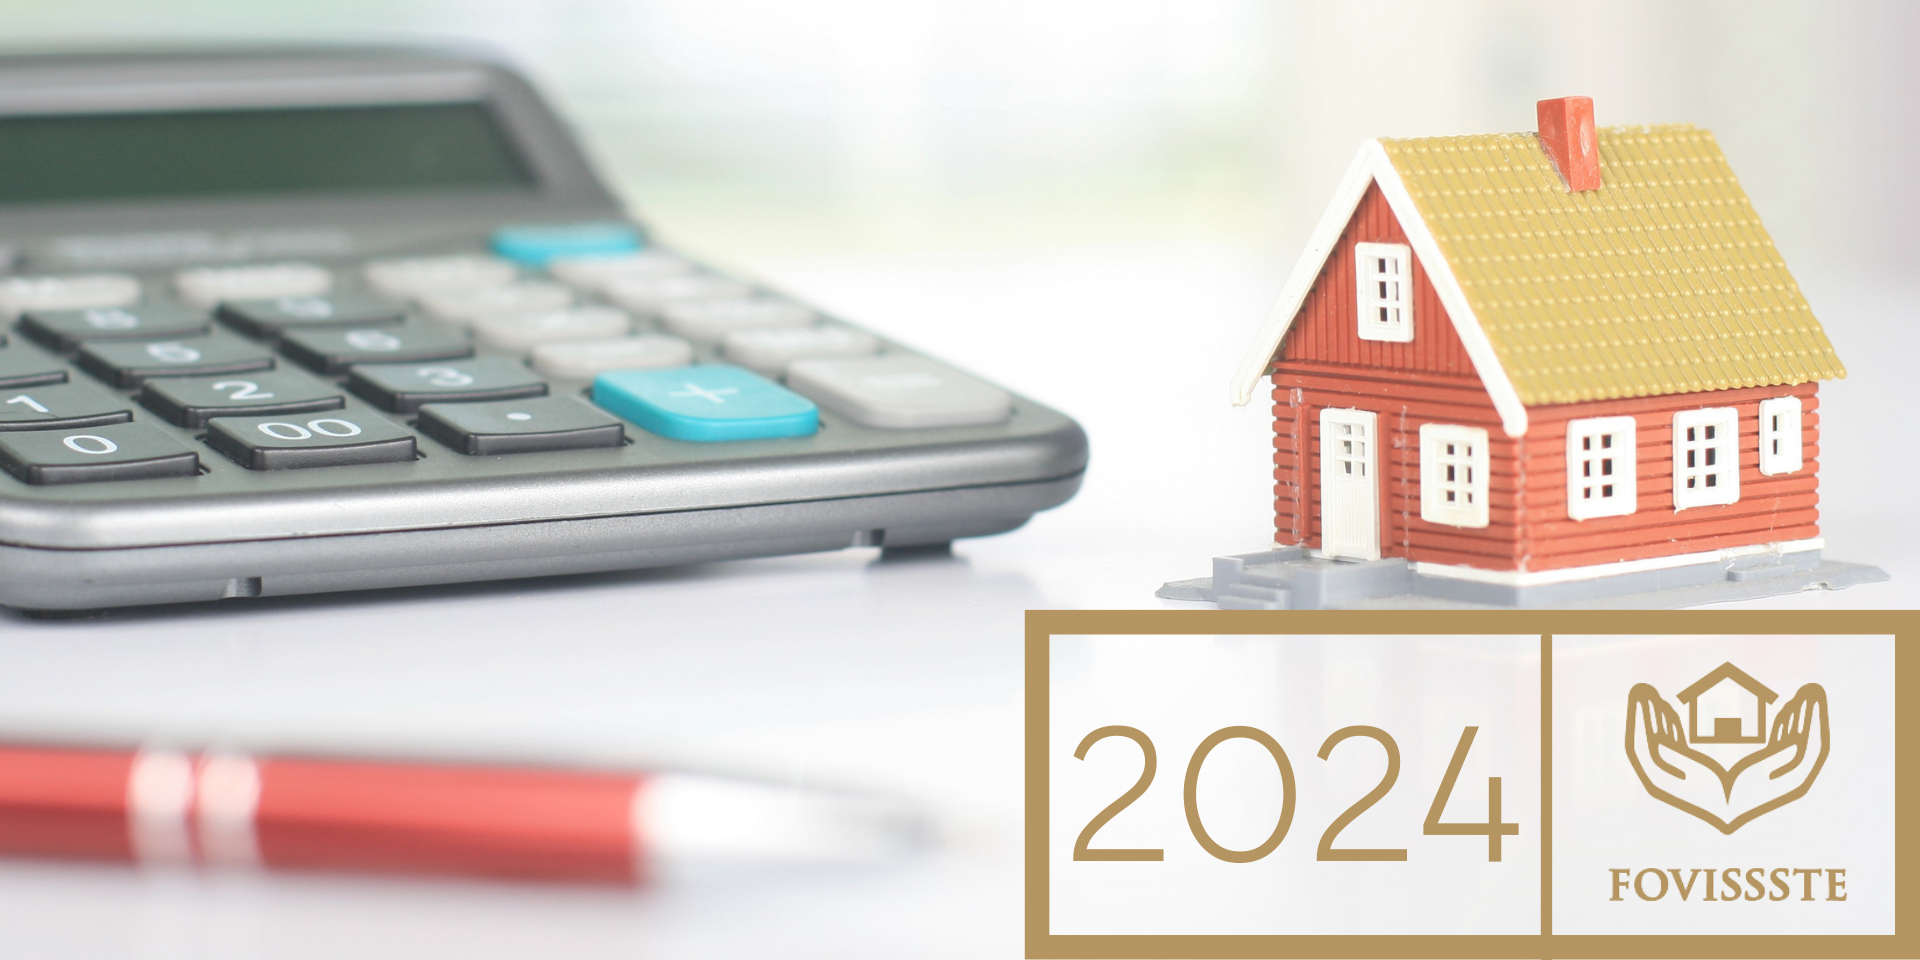 Cómo funciona crédito FOVISSSTE 2024 para comprar casa o departamento.